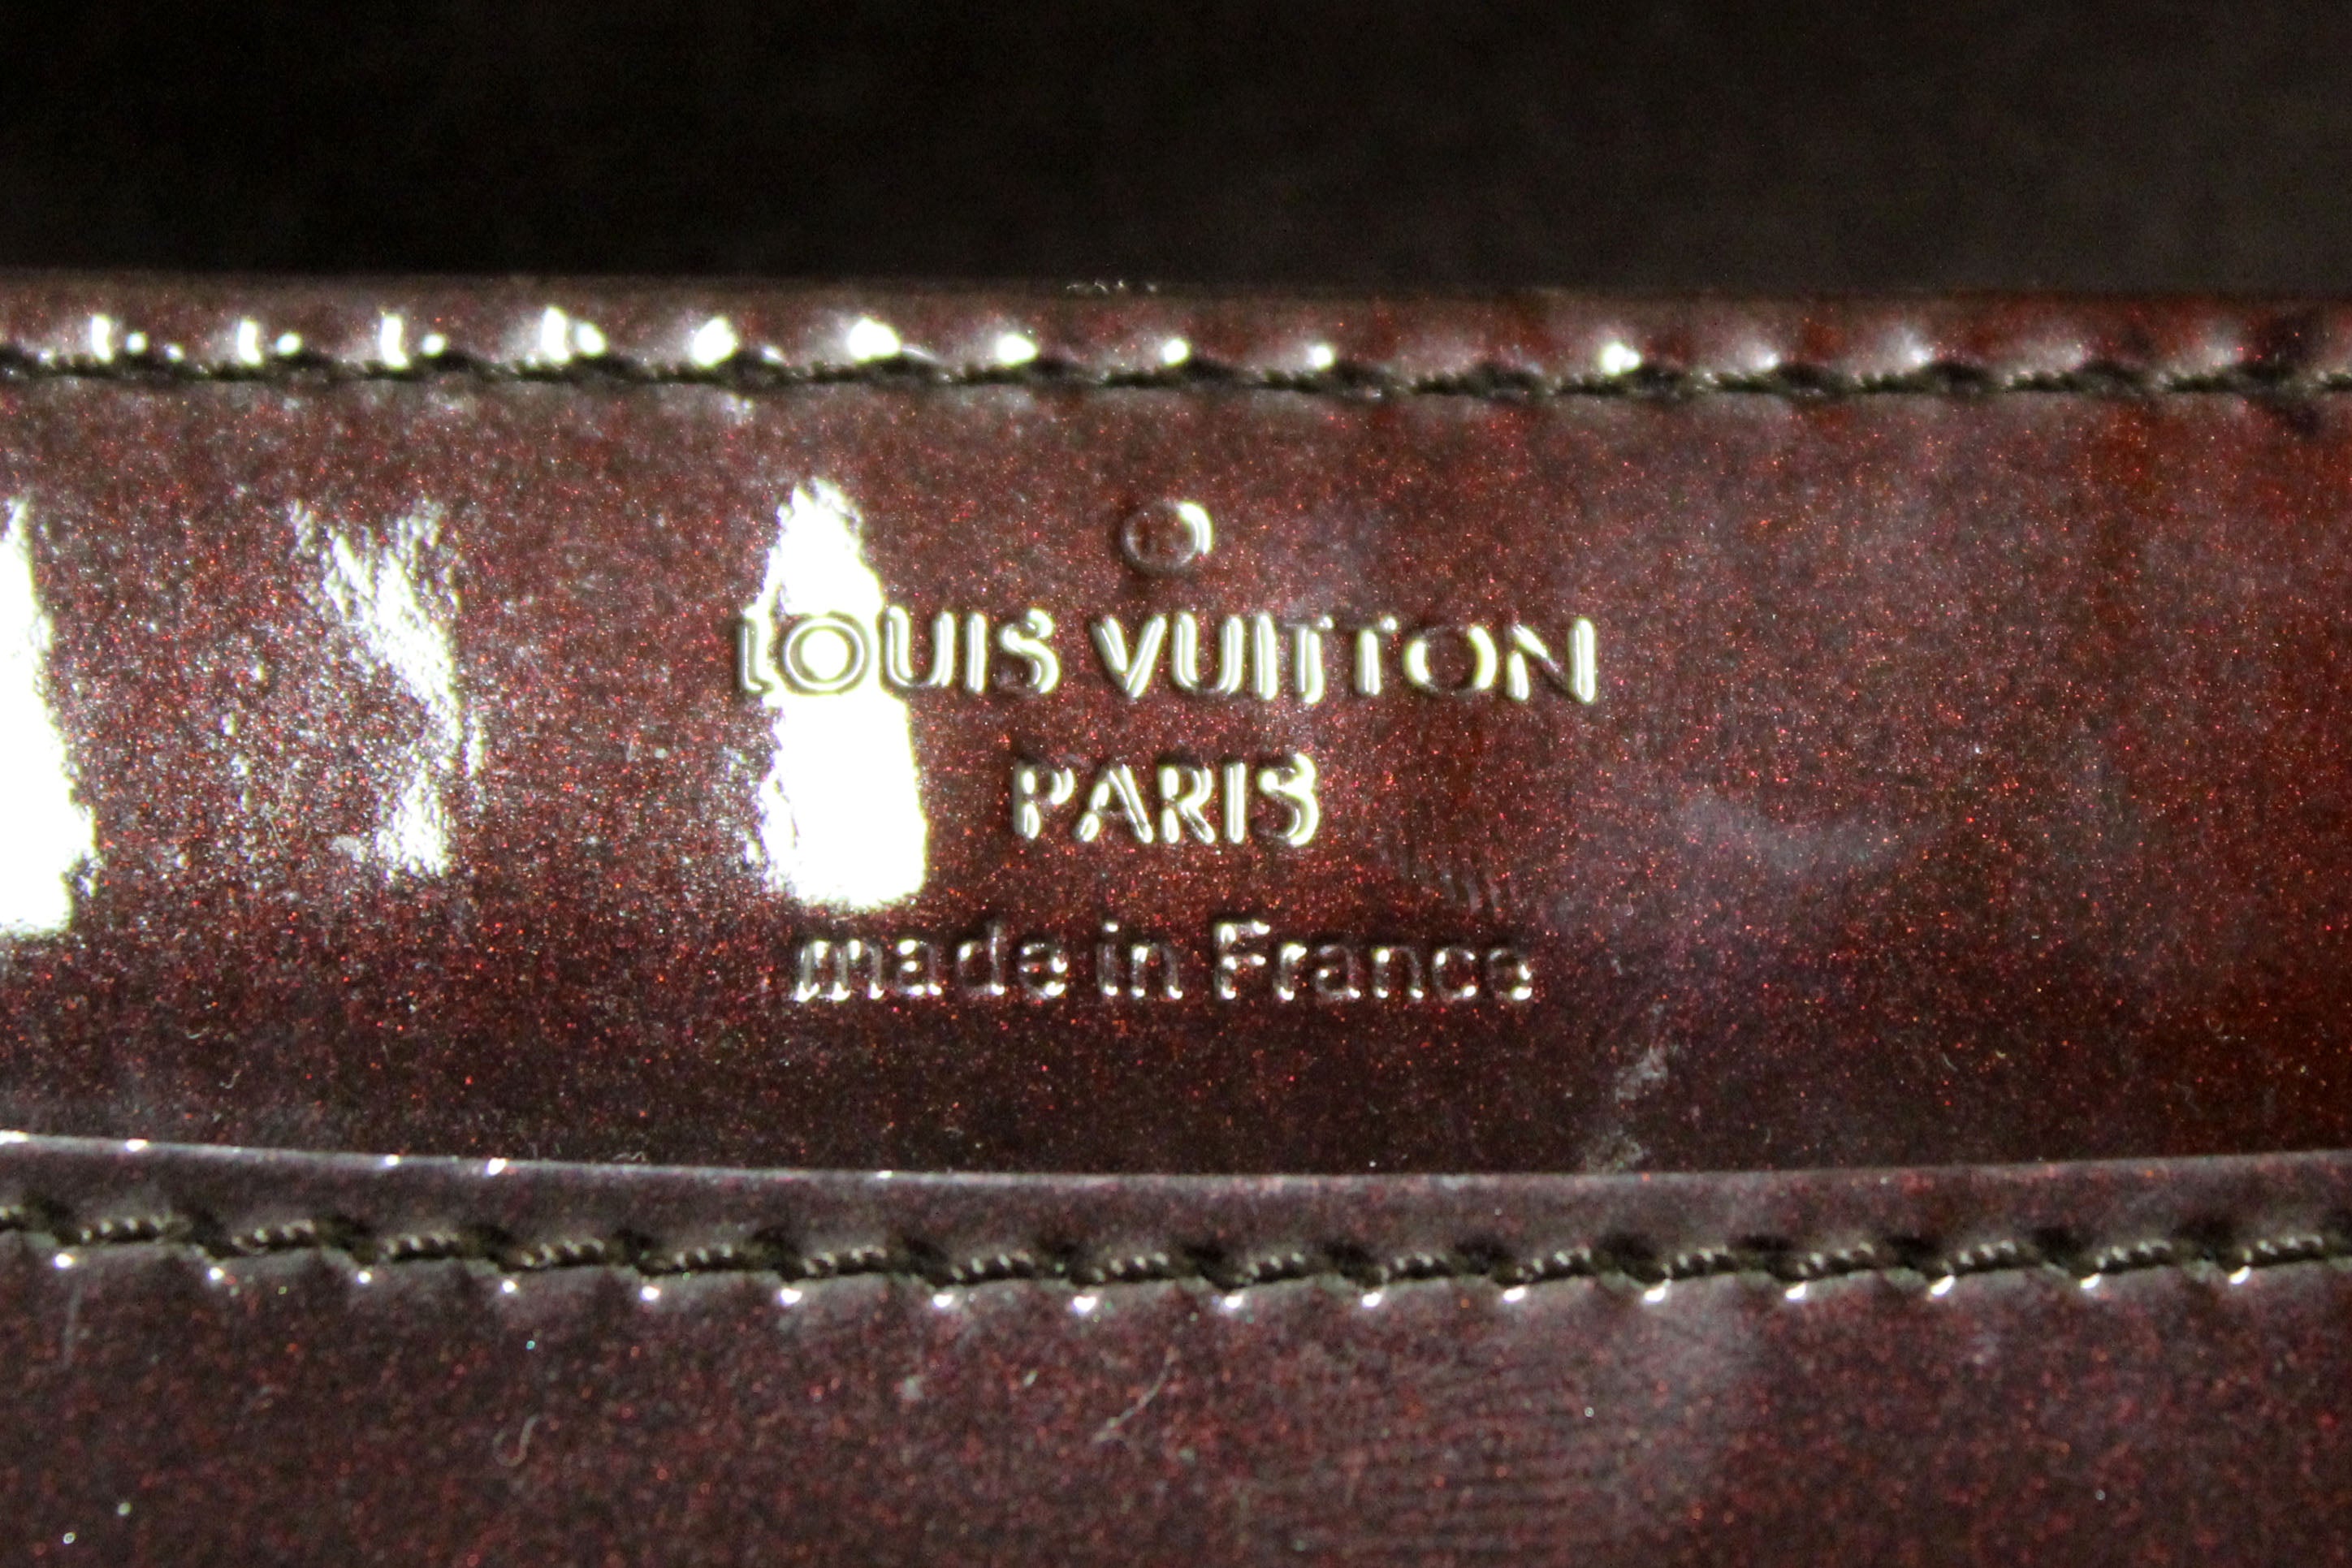 Authentic Louis Vuitton Amarante Vernis Patent Leather Louise Clutch Bag